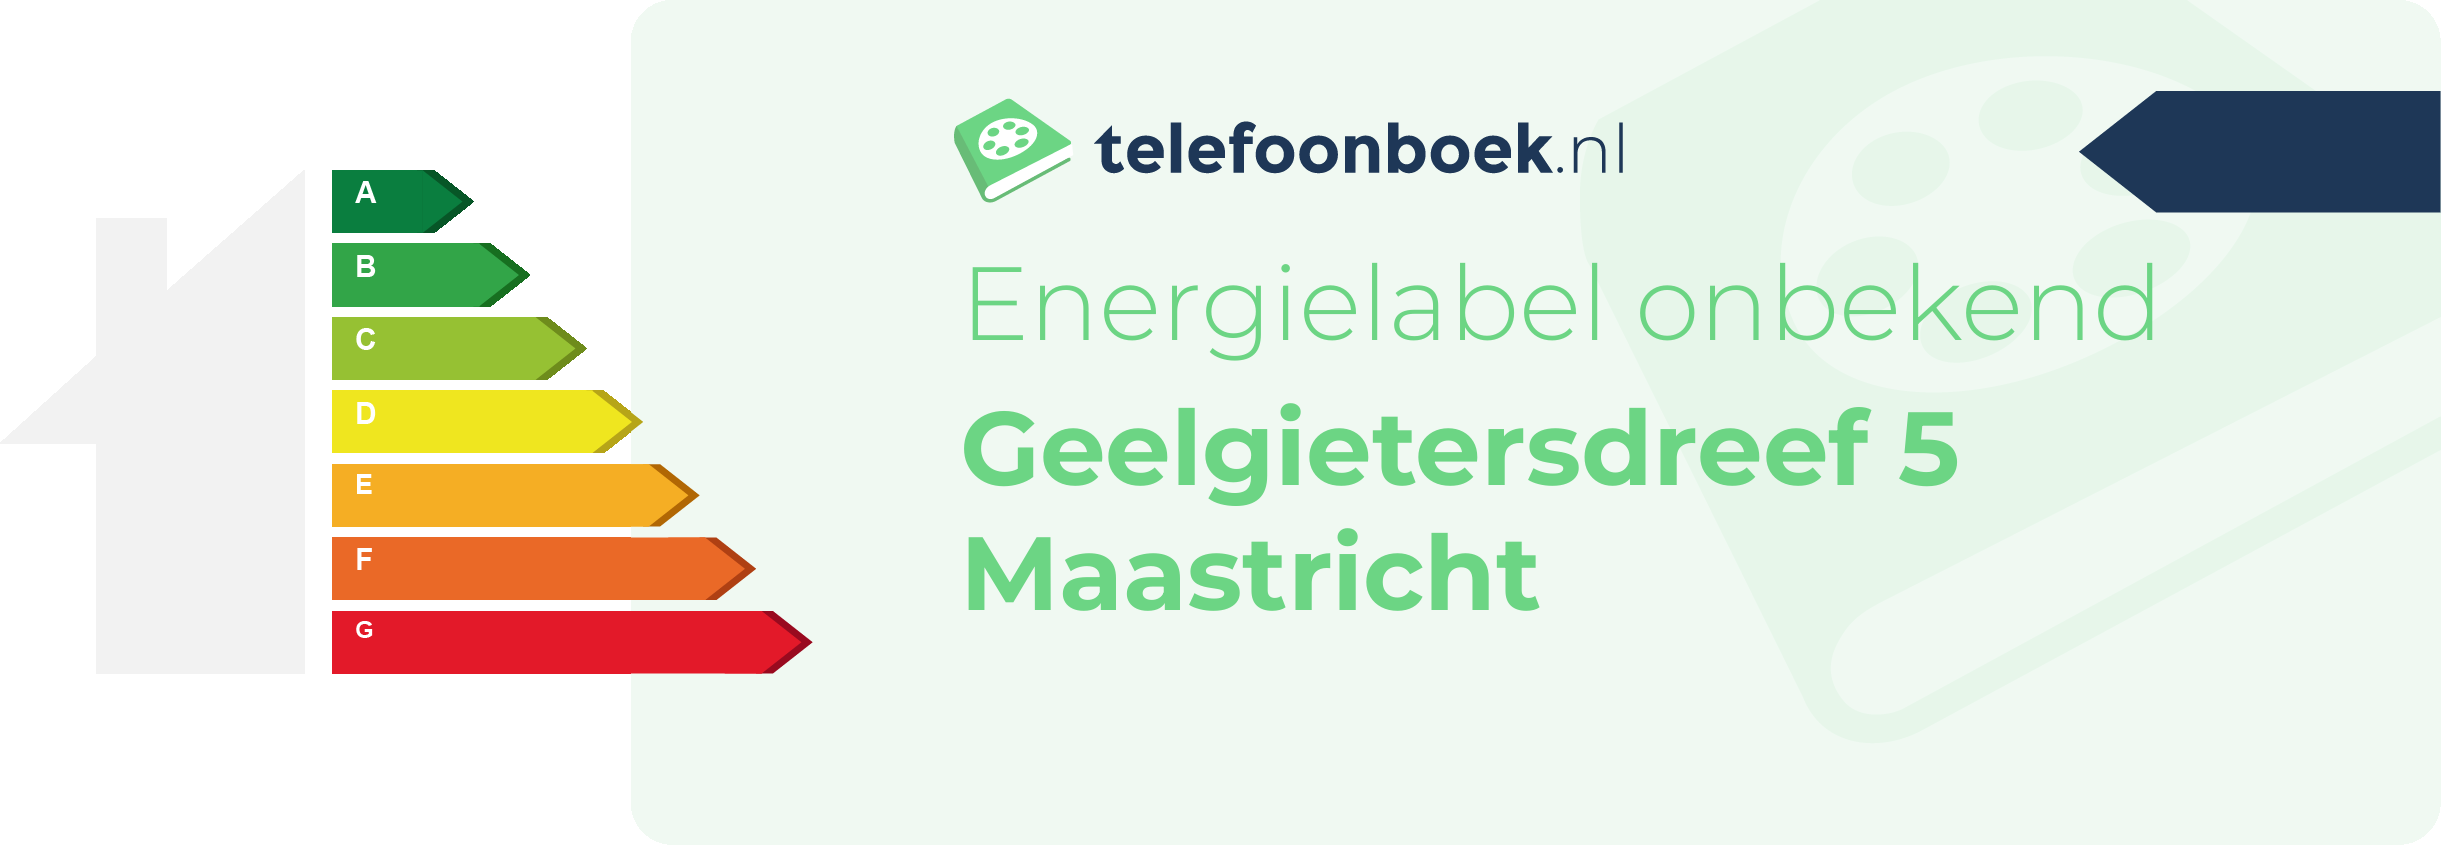 Energielabel Geelgietersdreef 5 Maastricht